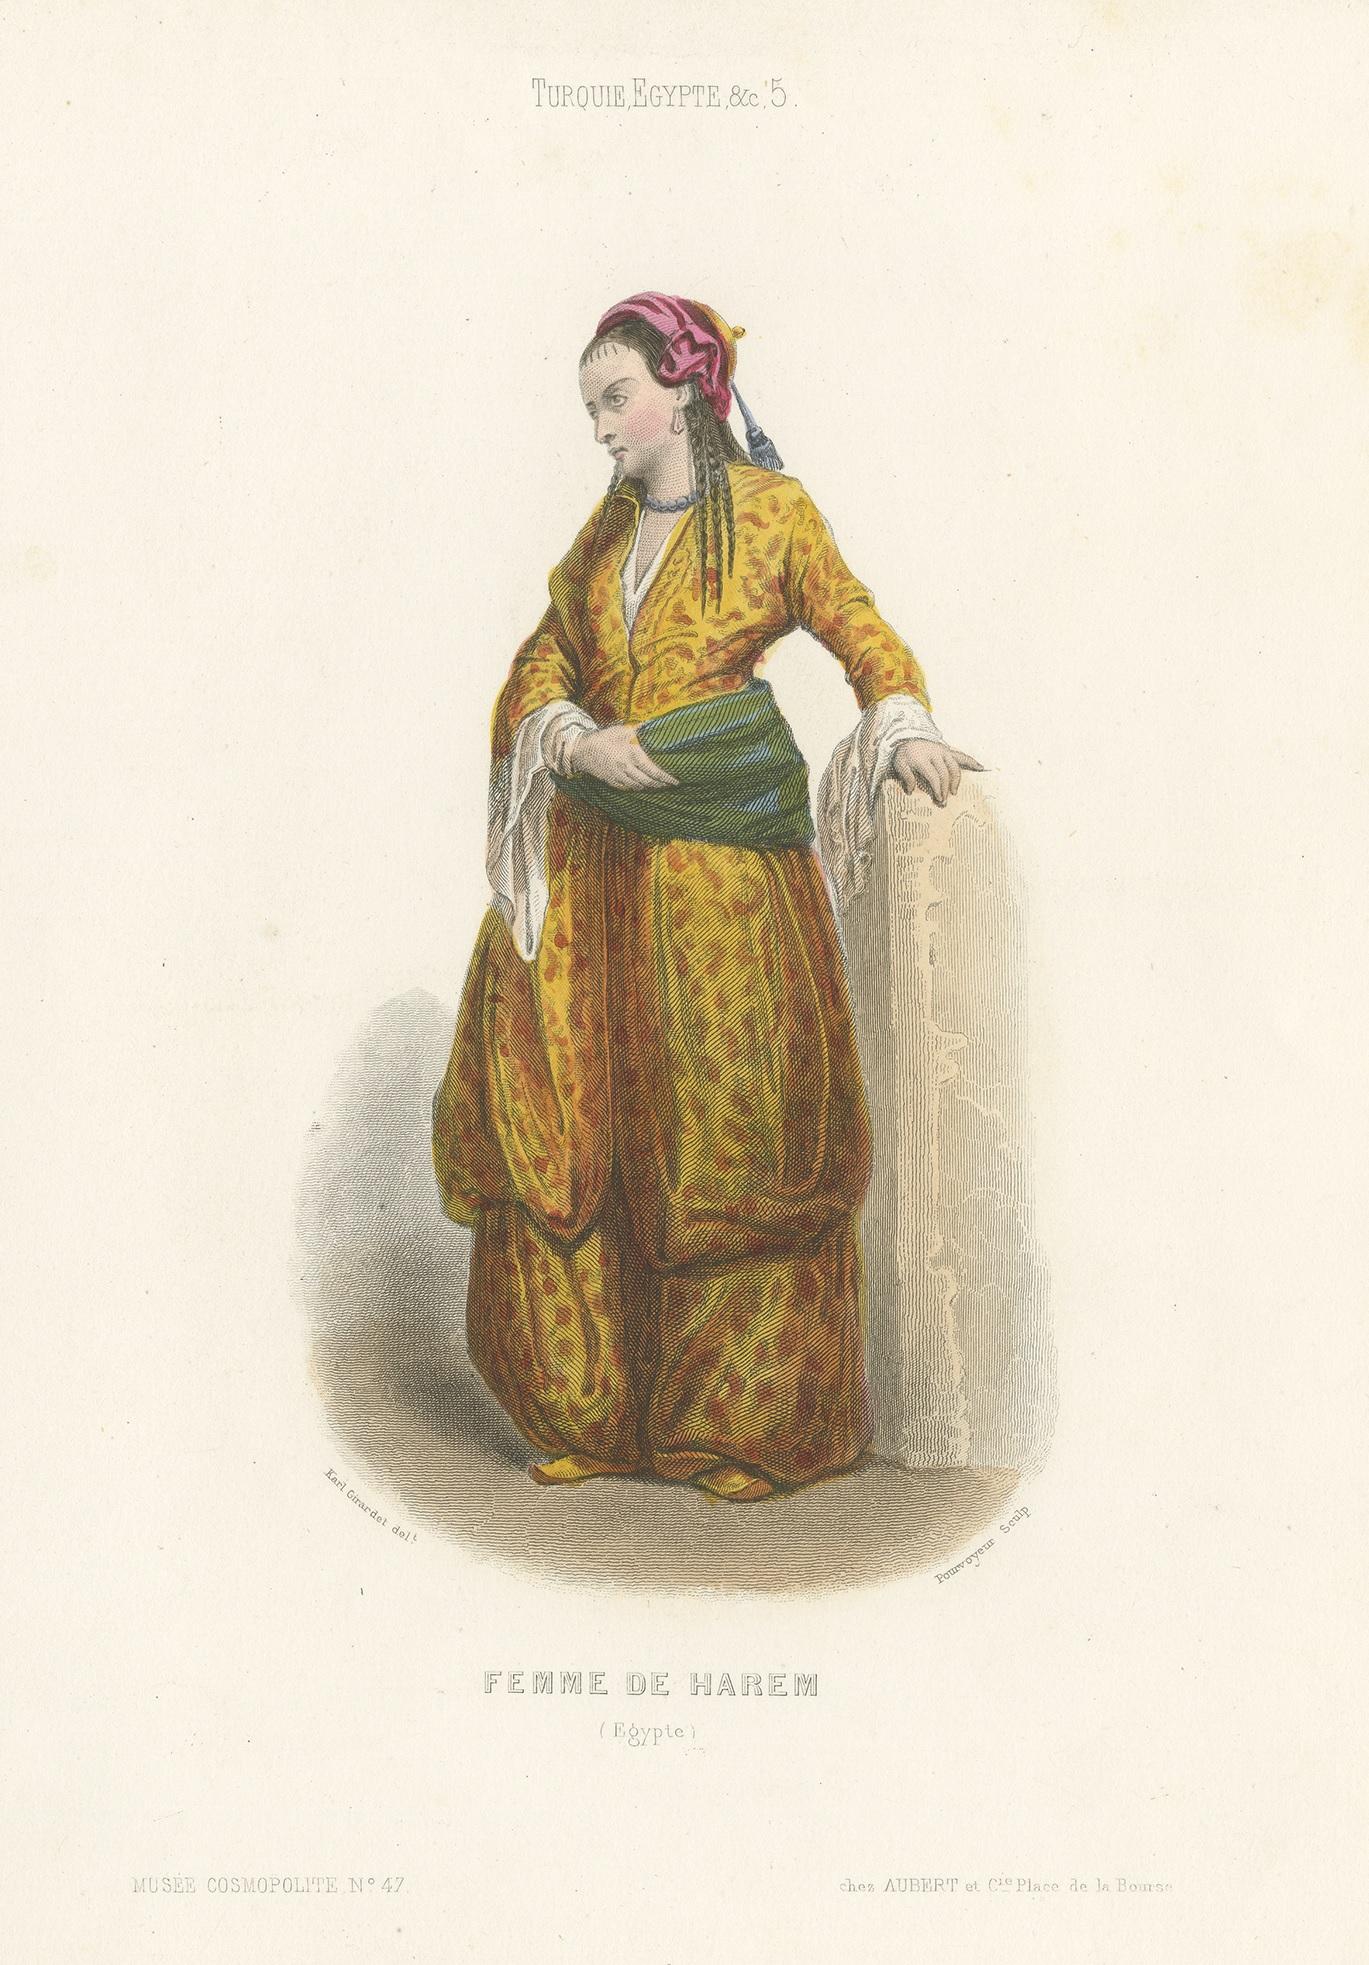 1850 costume